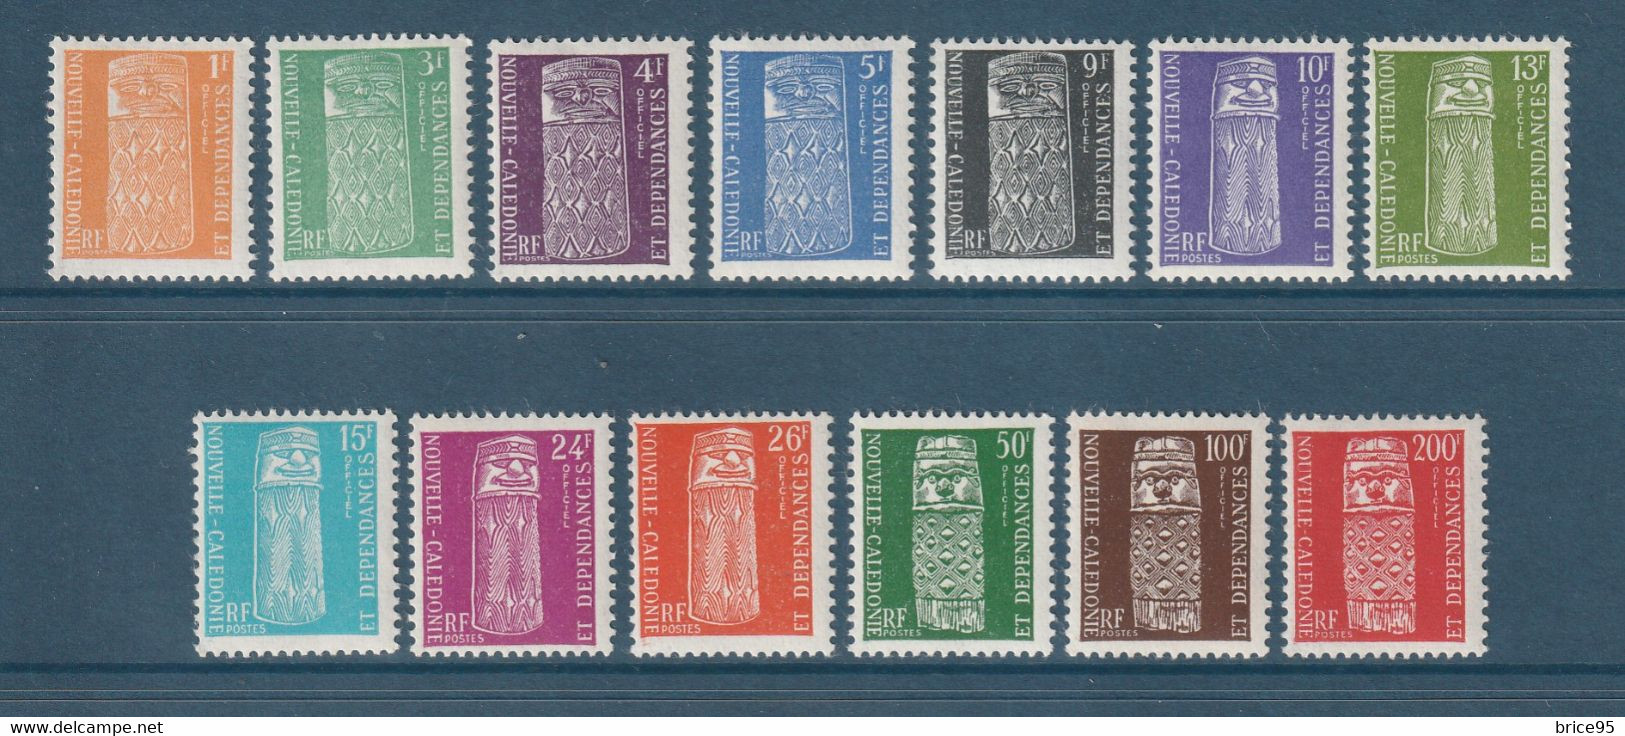 Nouvelle Calédonie - Service - YT N° 1 à 13 * - Neuf Avec Charnière - 1959 - Dienstzegels